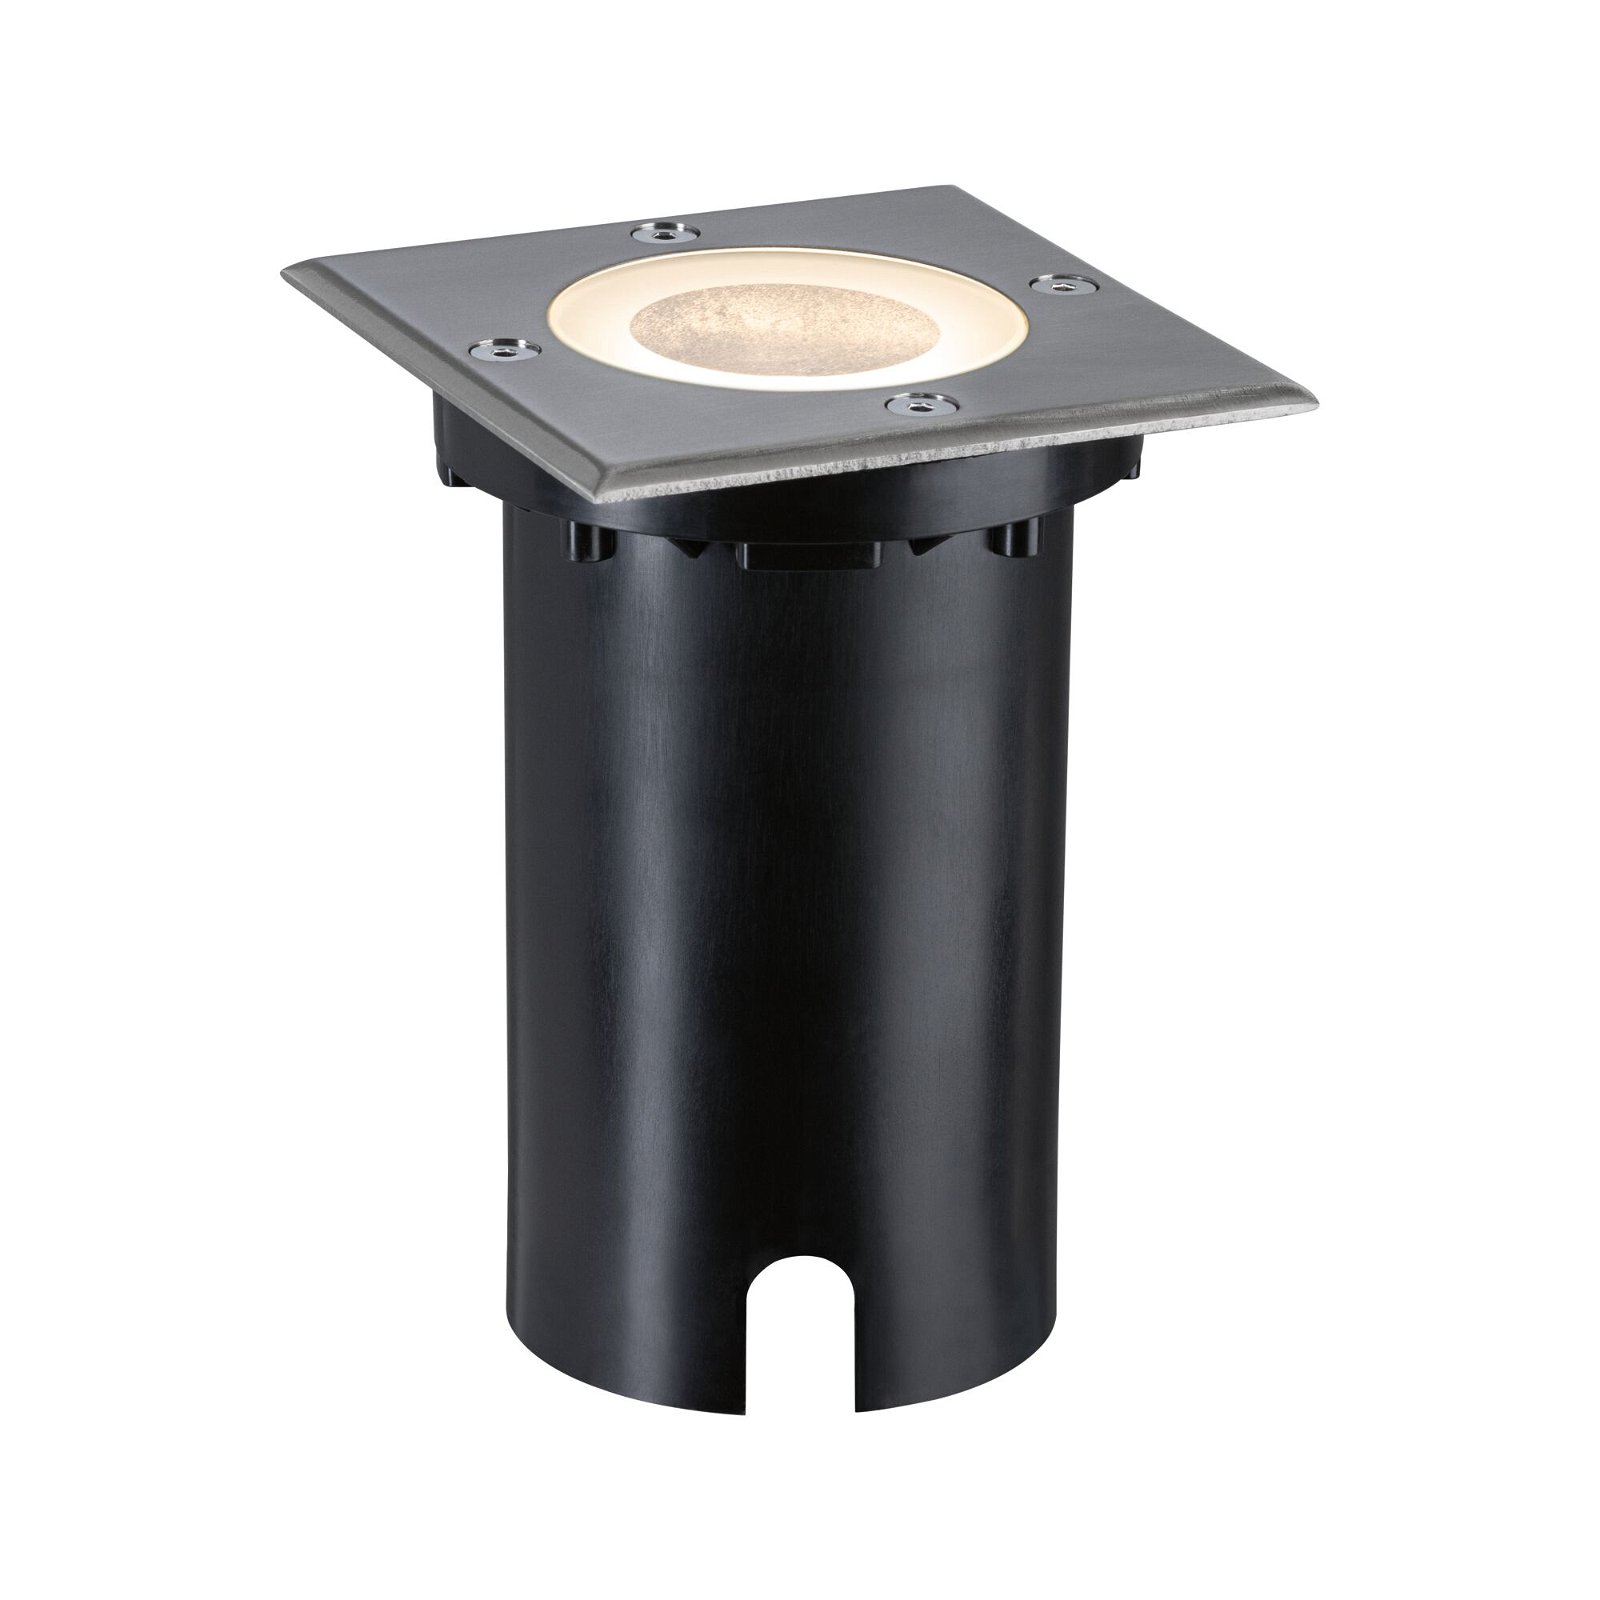 LED-grondinbouwlamp Smart Home Zigbee 3.0 Floor IP67 hoekig 110x110mm RGBW+ 4,9W 300lm 230V 120° Staal geborsteld Aluminium